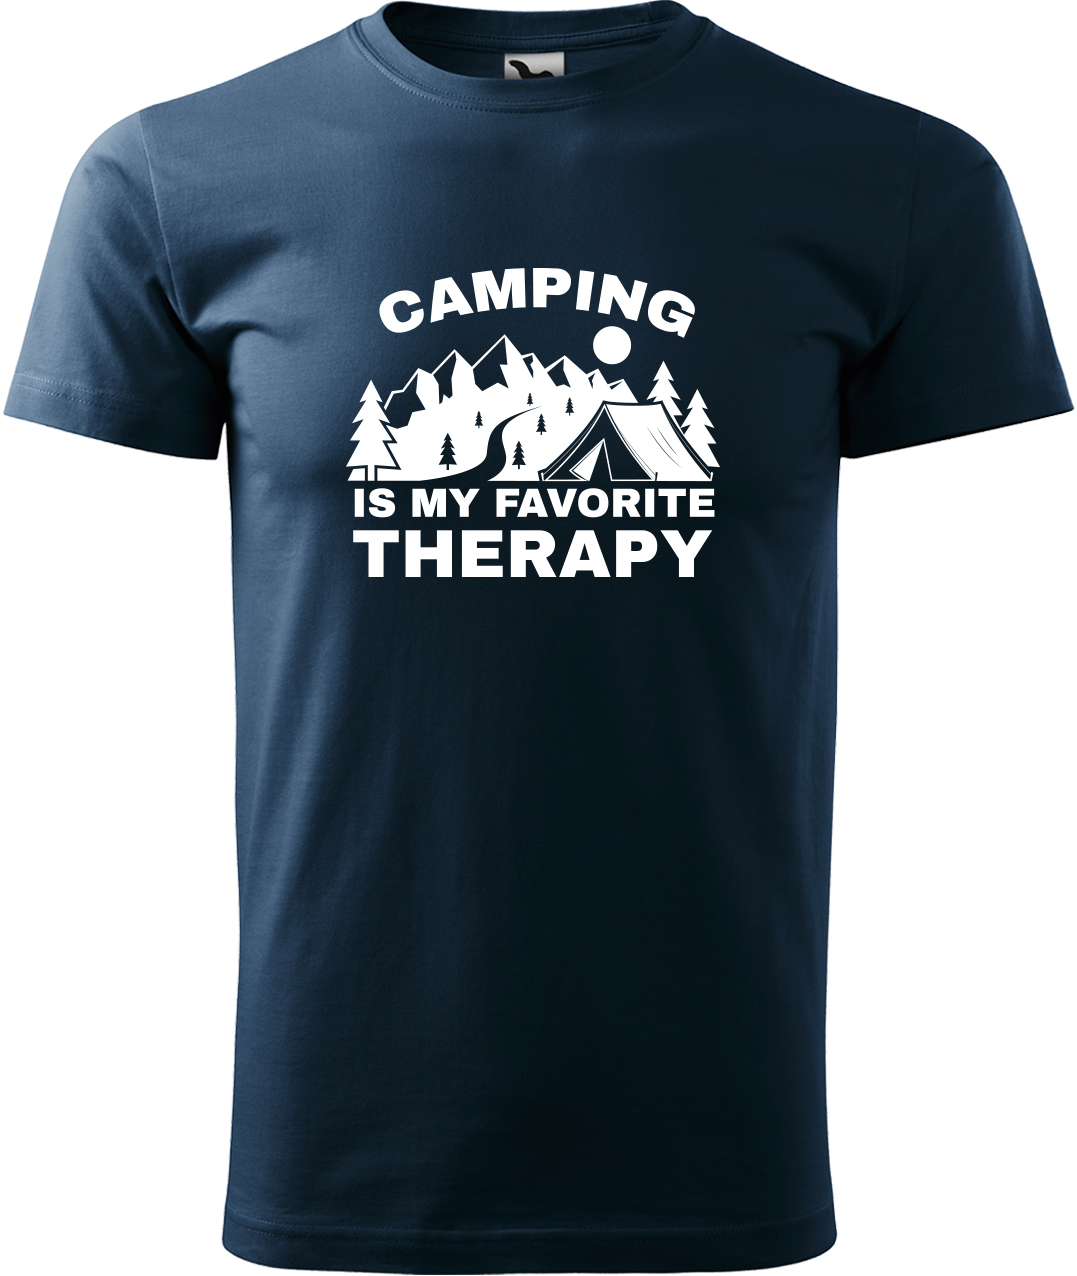 Pánské cestovatelské tričko - Camping is my favorite therapy Velikost: L, Barva: Námořní modrá (02), Střih: pánský